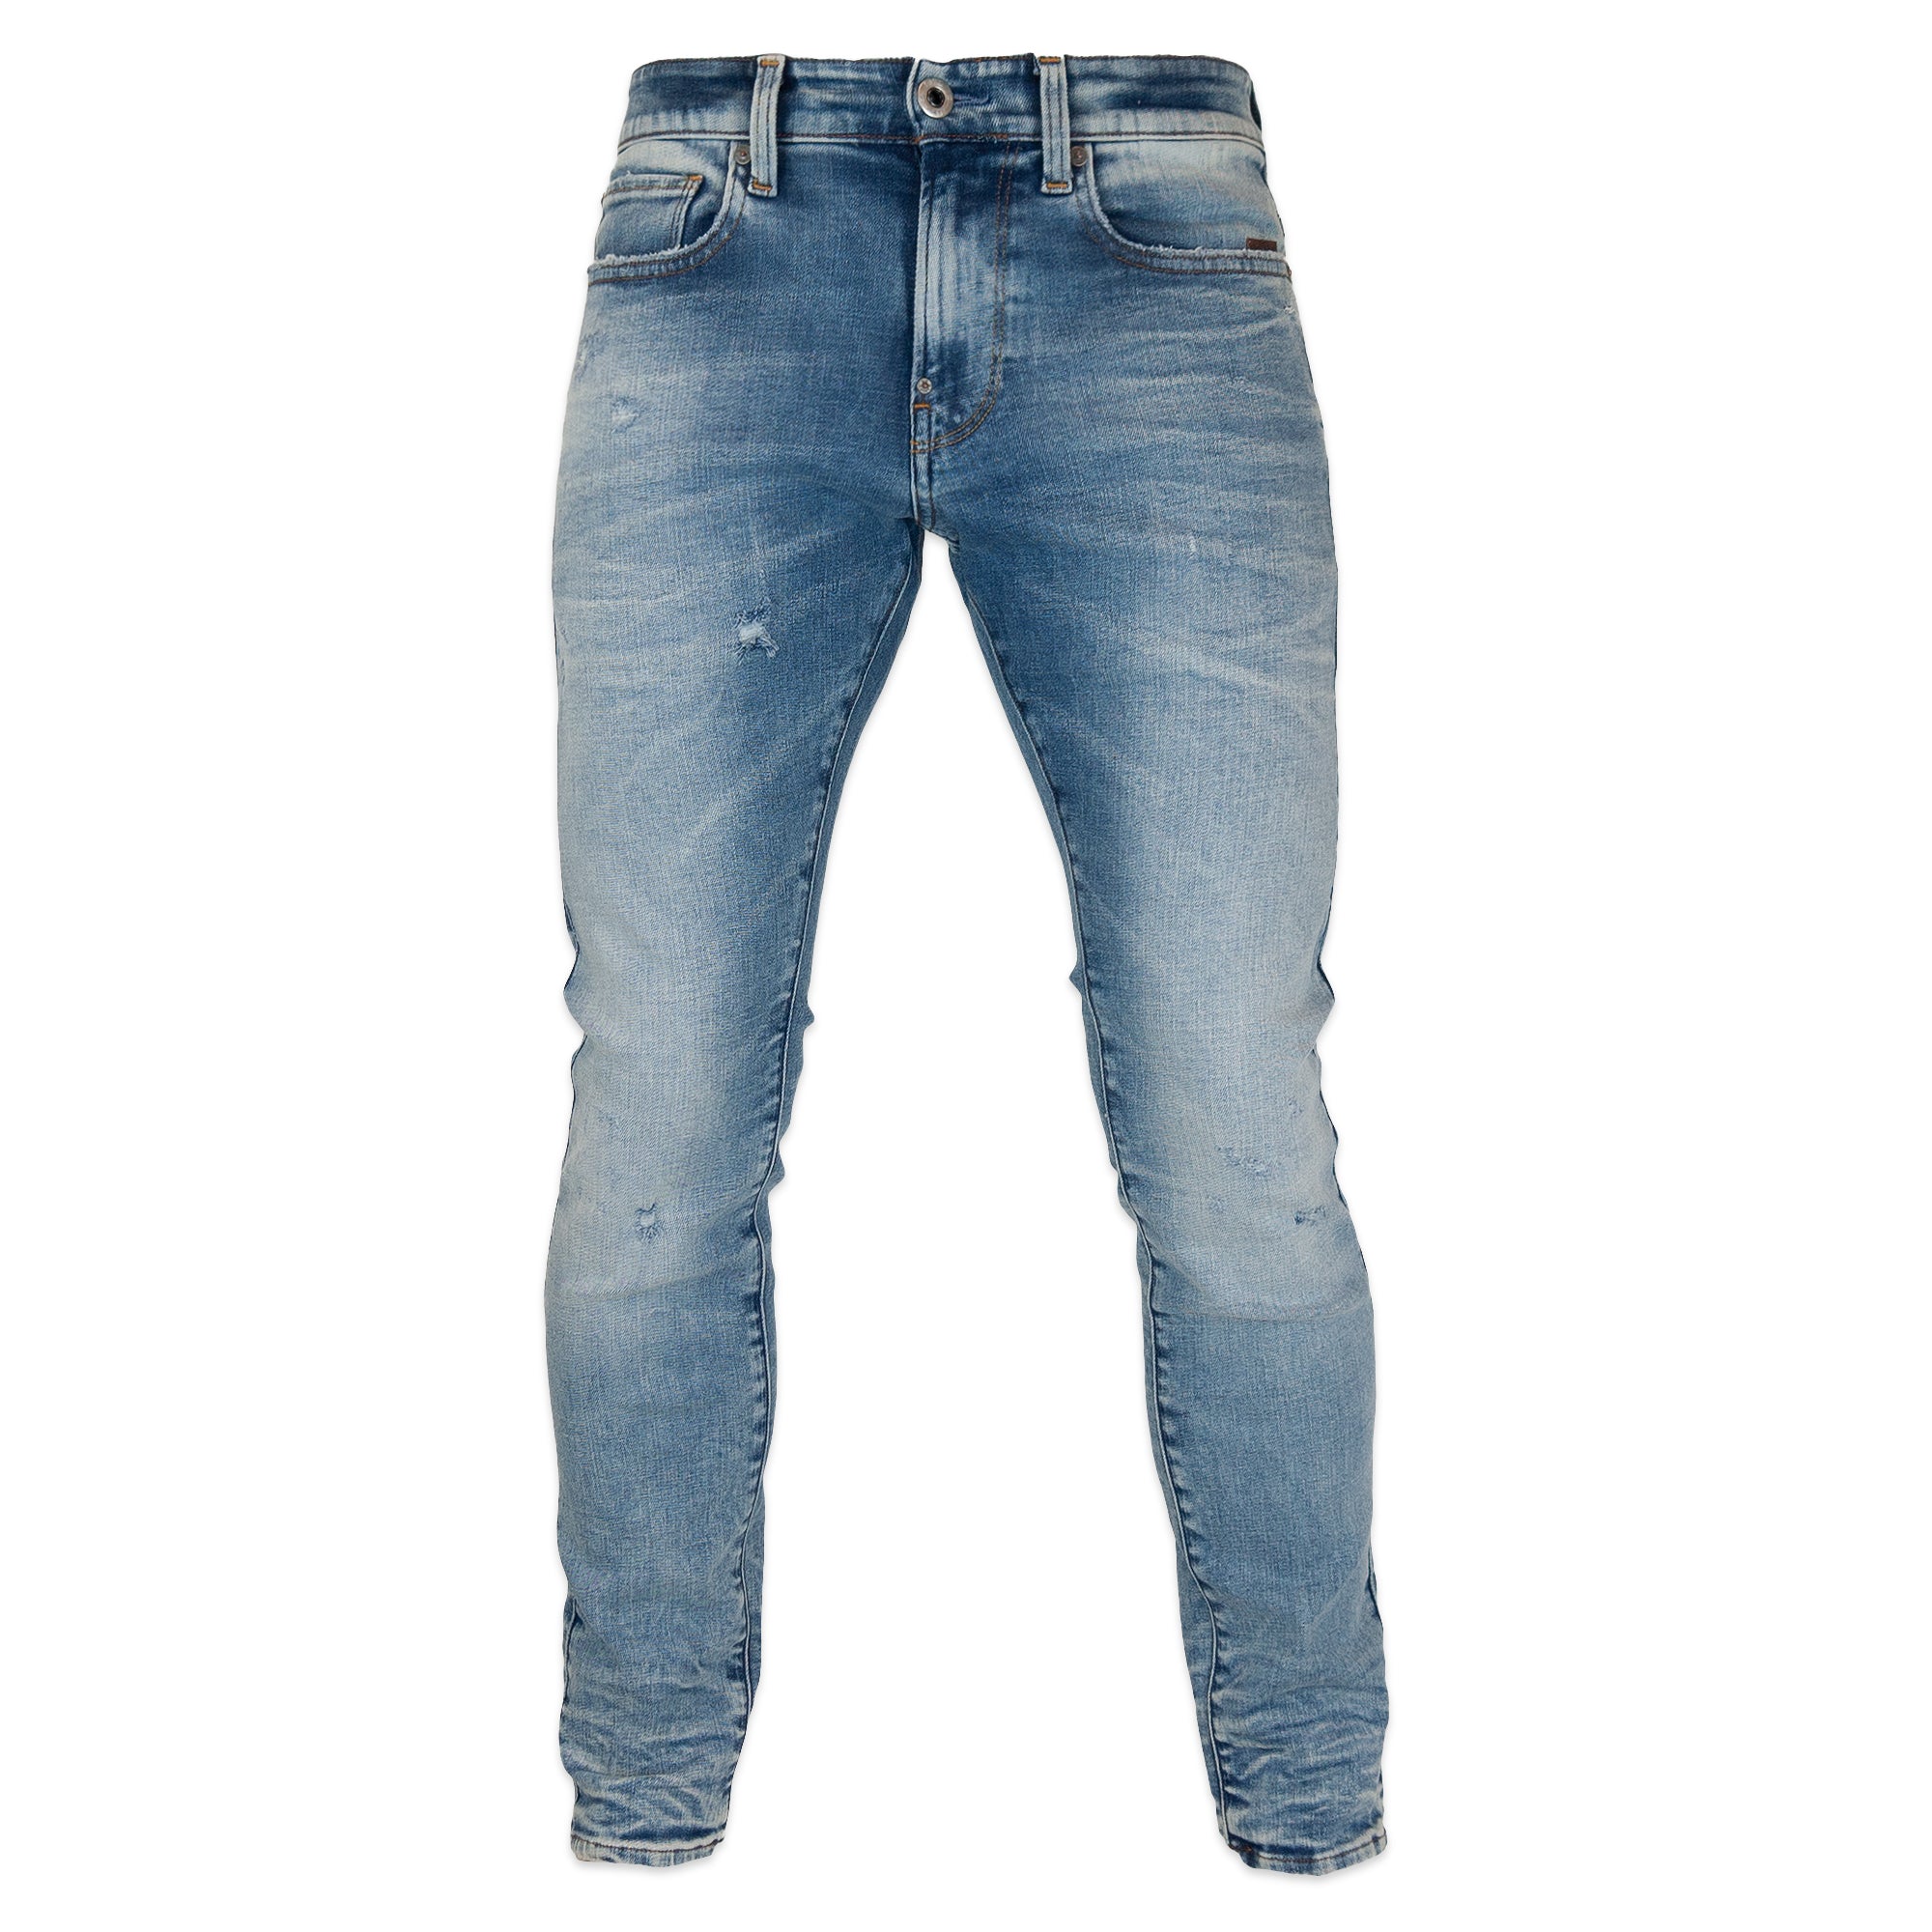 G-Star Revend Skinny Jeans - Elto Superstretch Vintage Striking Blue Destroyed